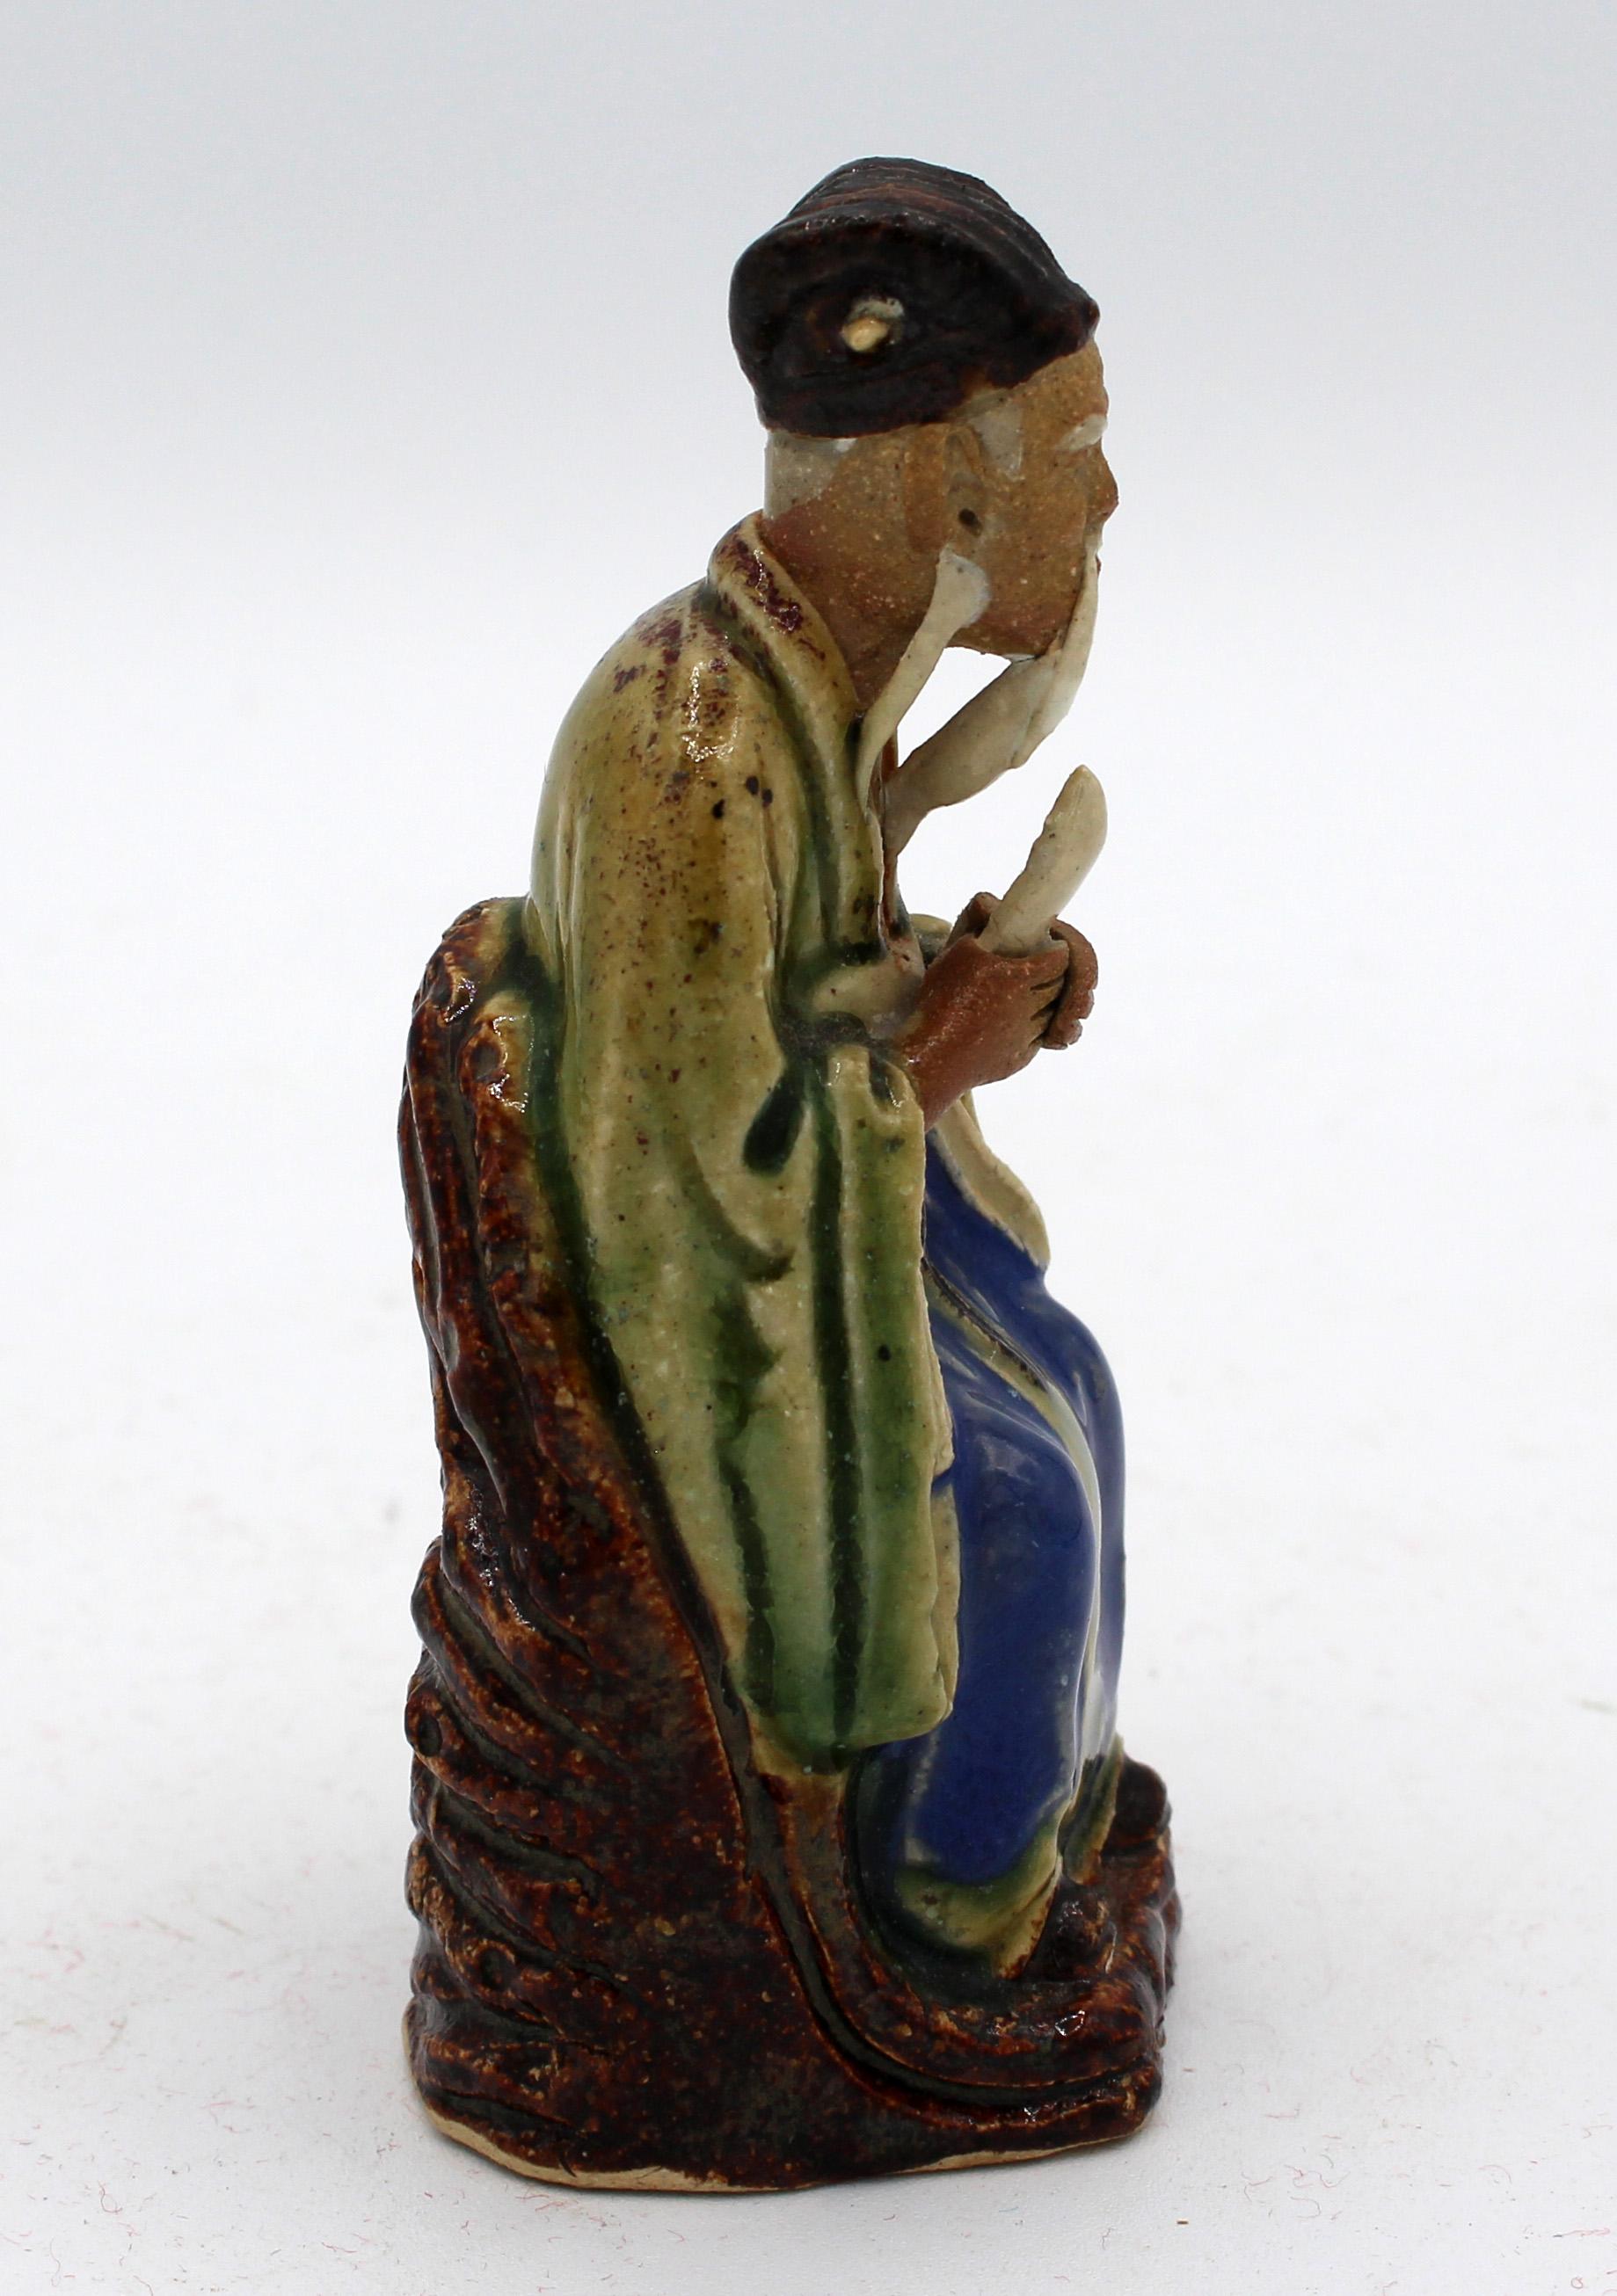 Ceramic Late 19th Century World's Fairs Chinese Mud Man Figure